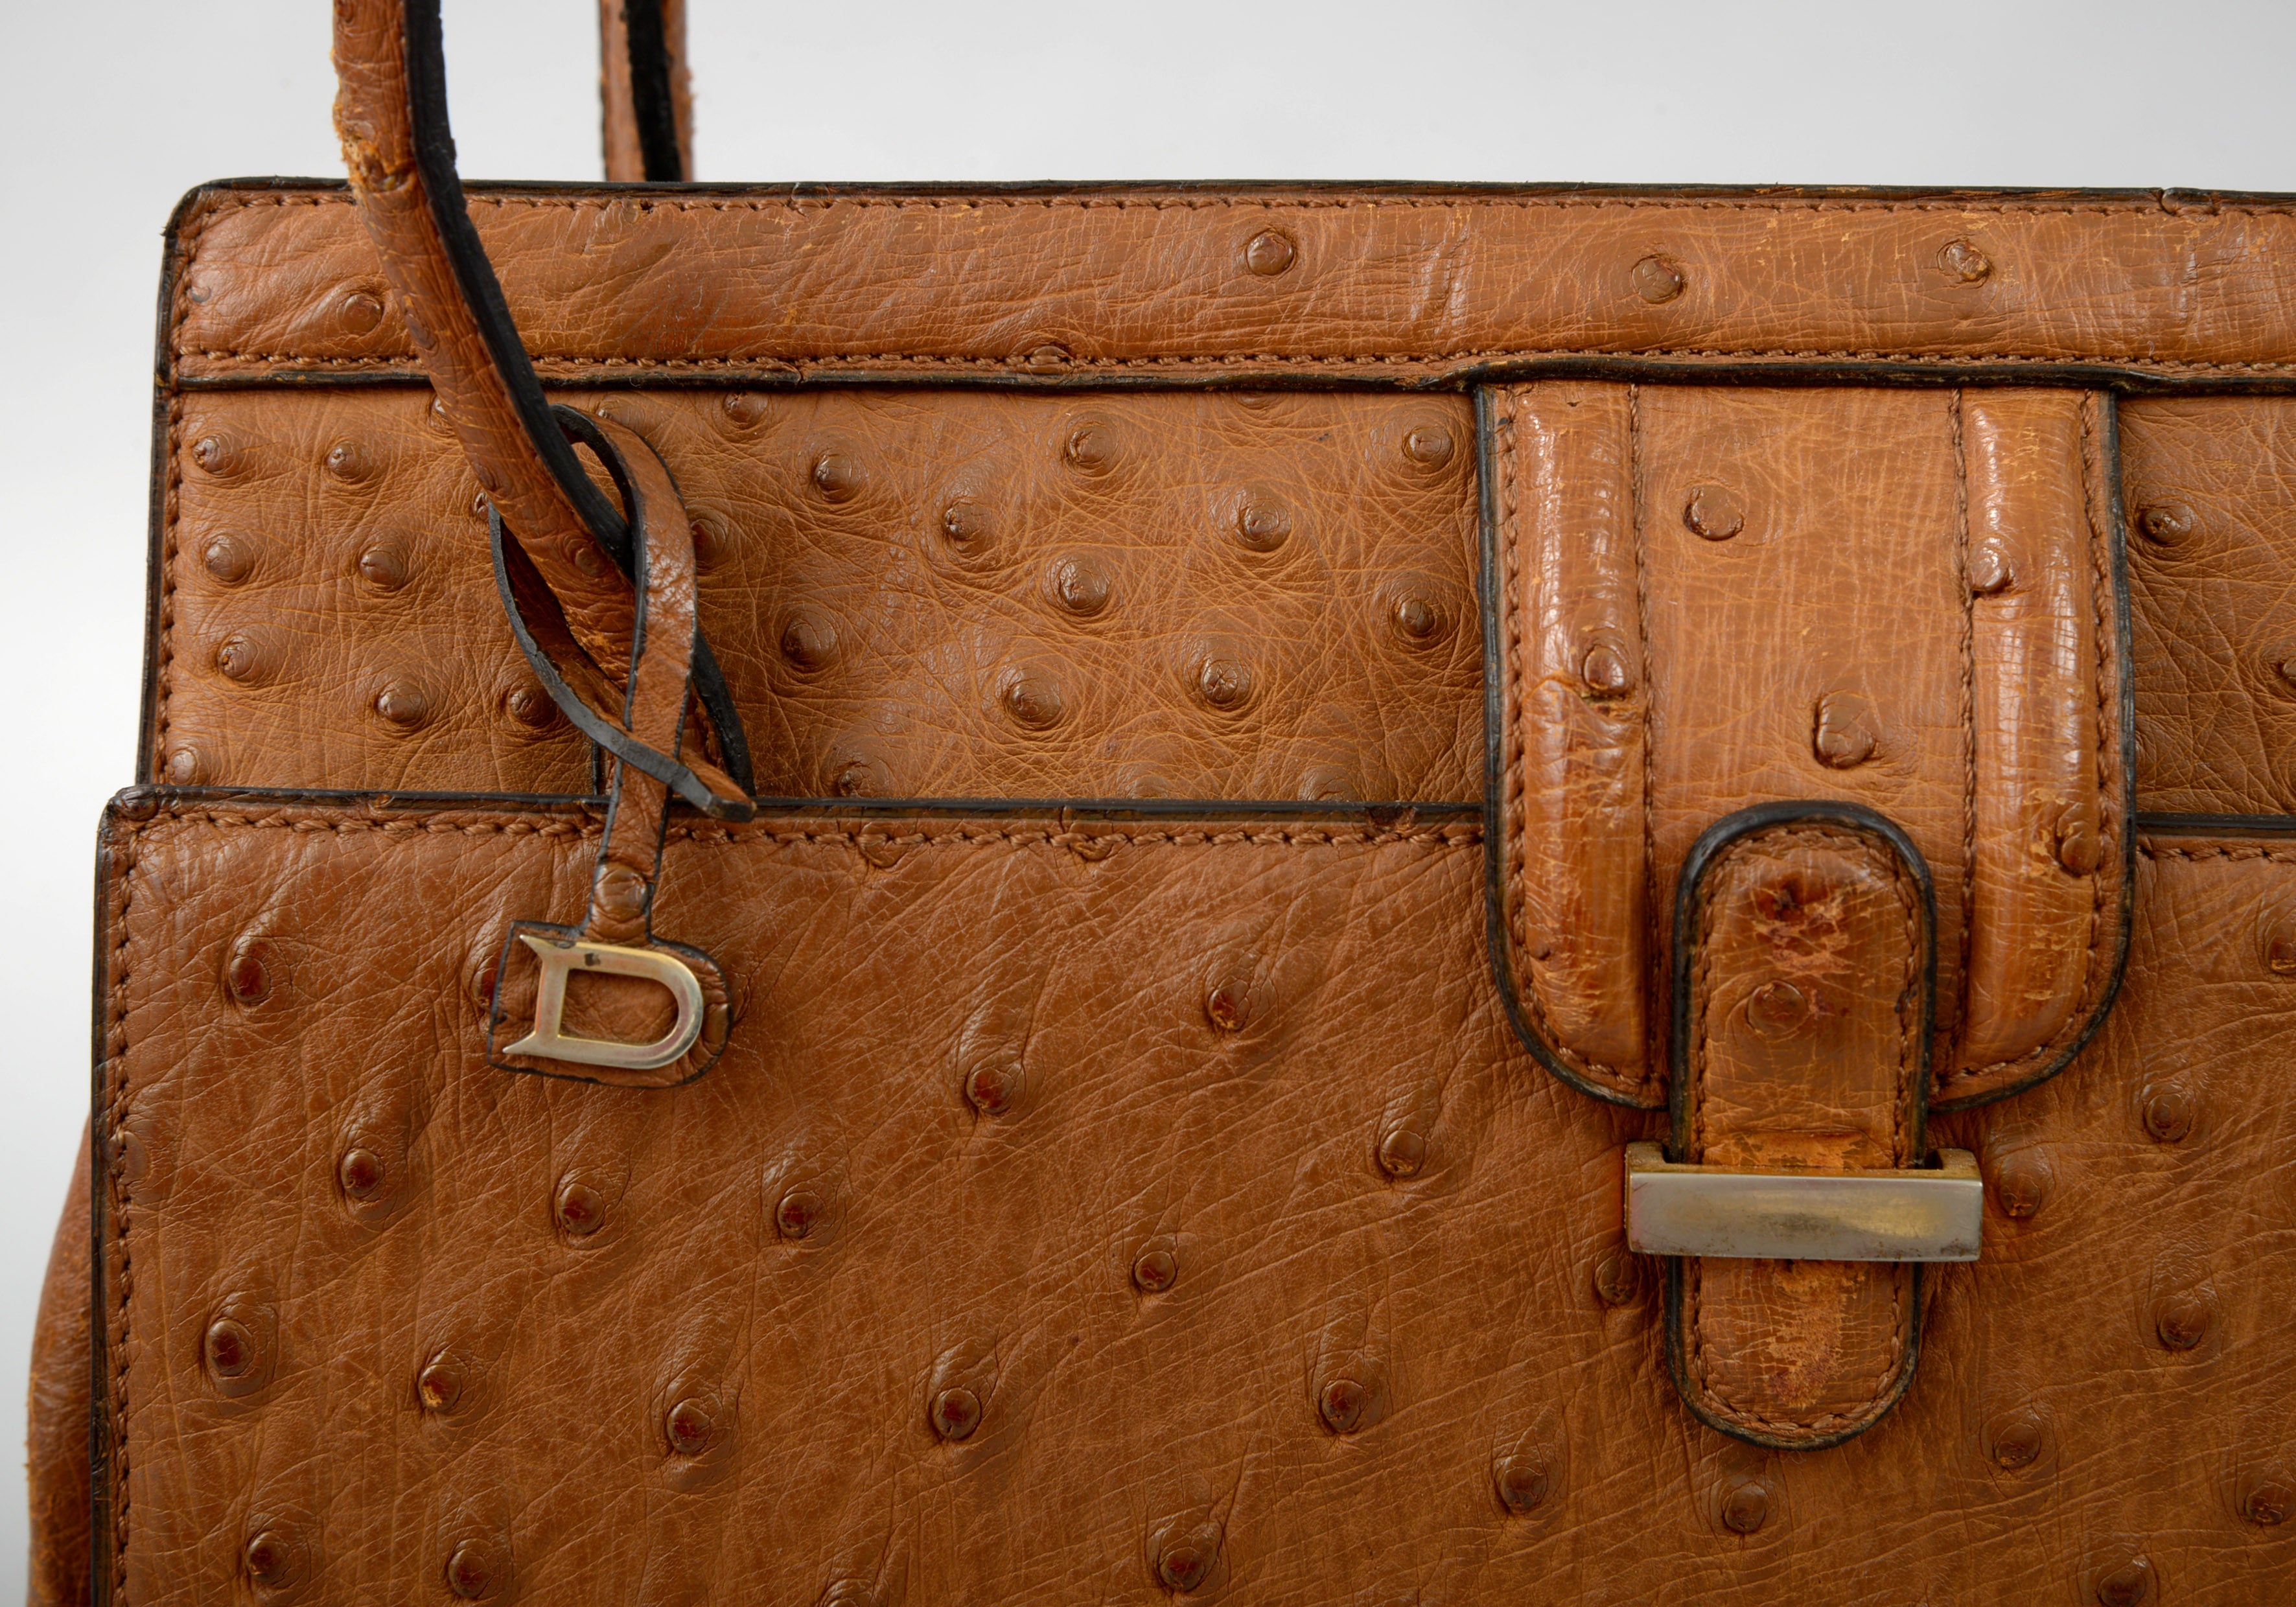 At Auction: A Delvaux Brillant MM ostrich leather handbag, H 22 - W 29 - D  15 cm